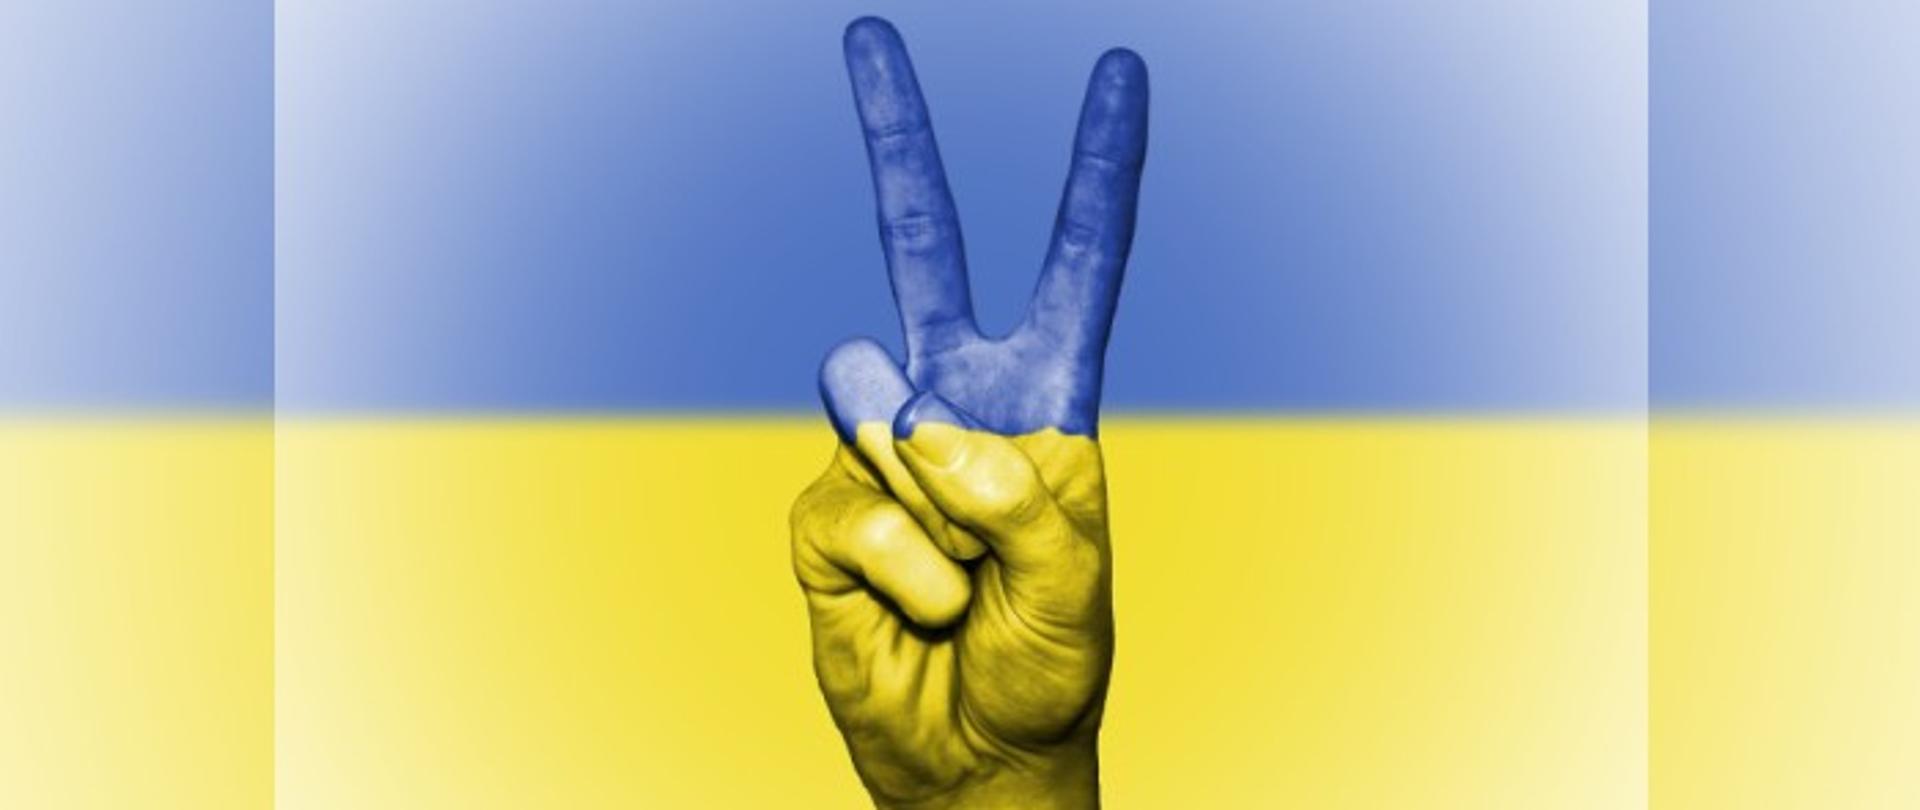 Zdjęcie ukazuje dłoń mężczyzny na tle braw narodowych Ukrainy